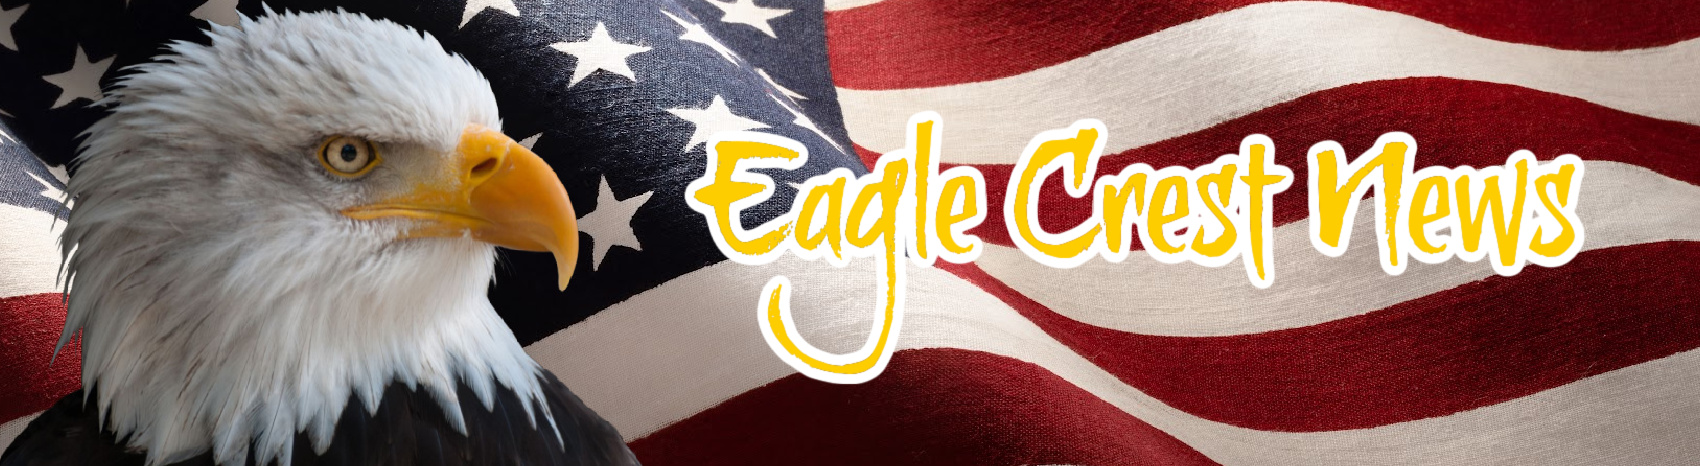 Eagle Crest News